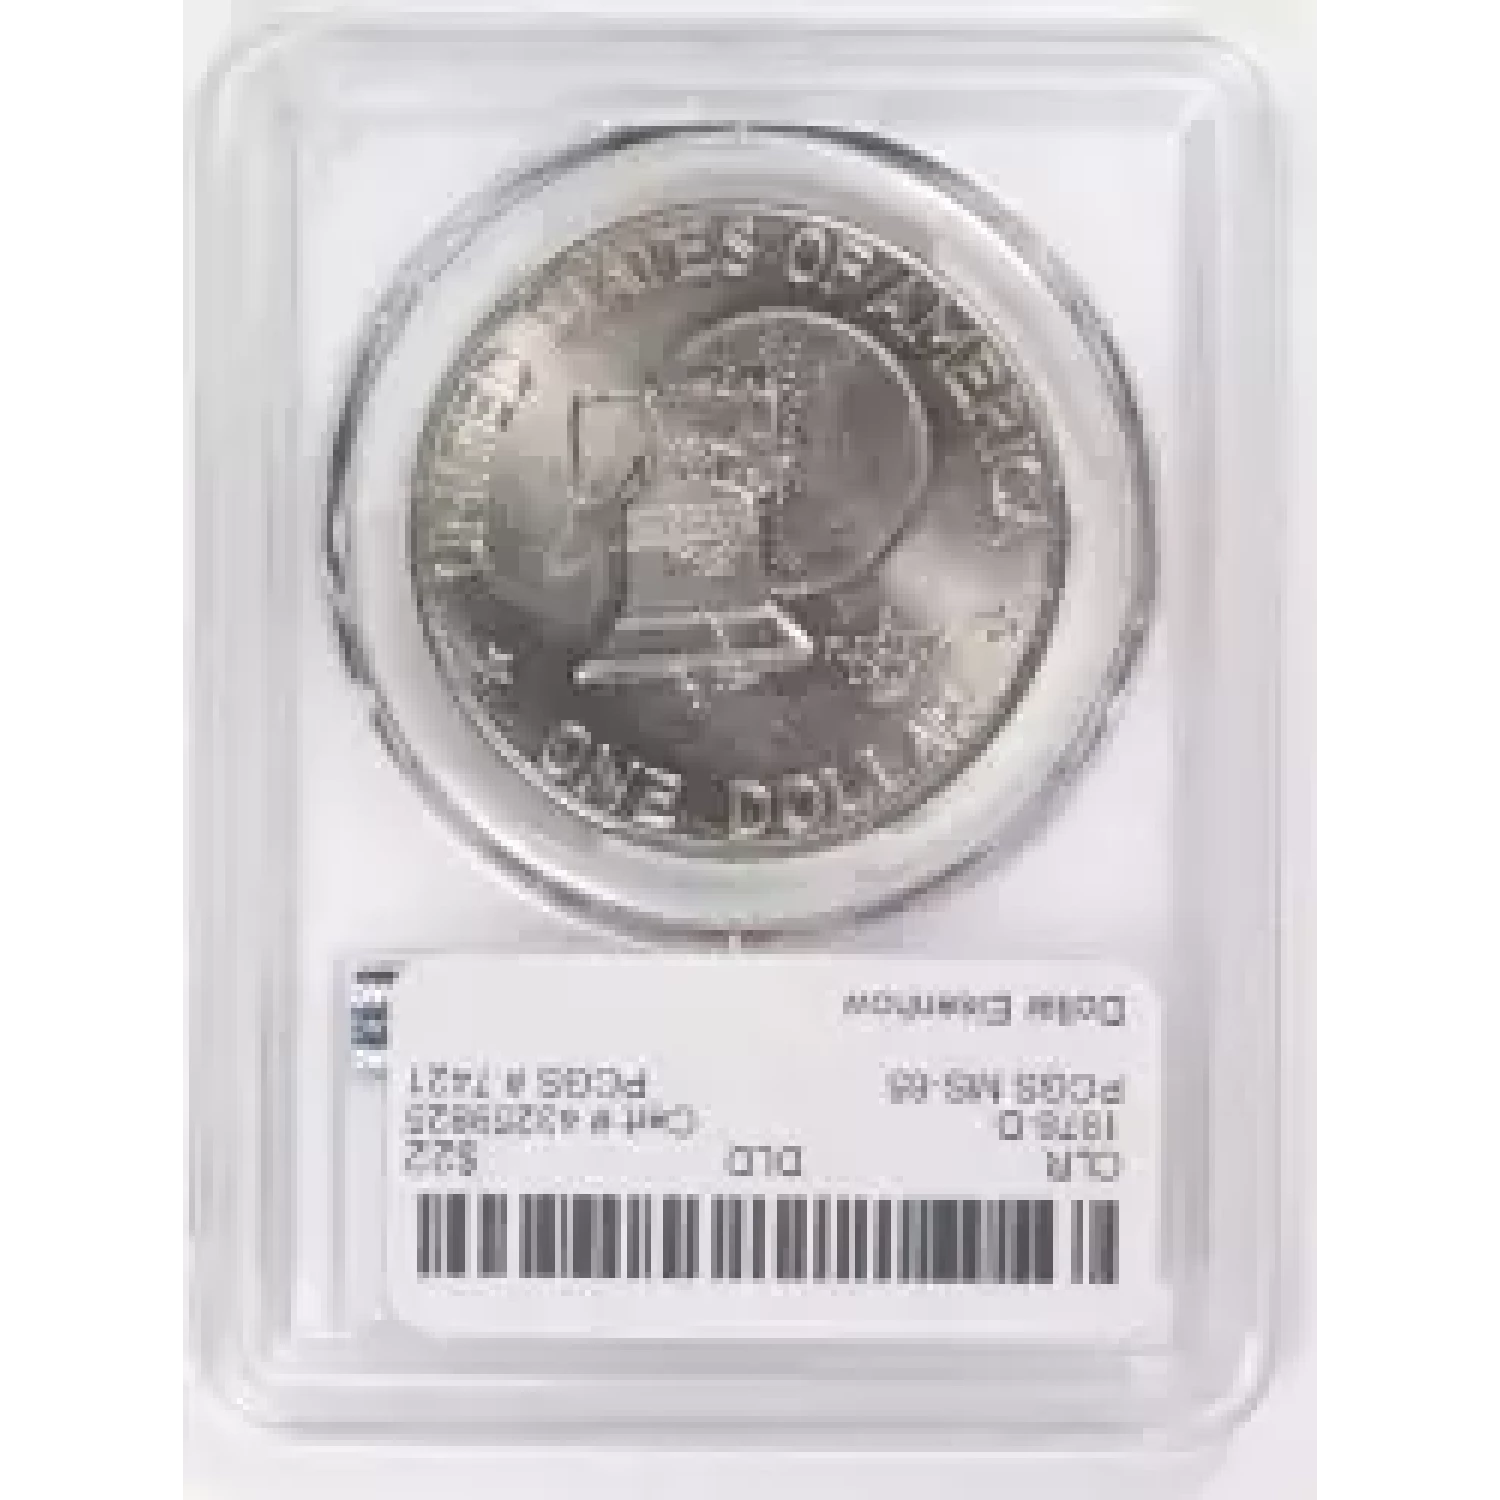 Dollars---Eisenhower 1971-1978 Copper-Nickel- 1 Dollar (2)